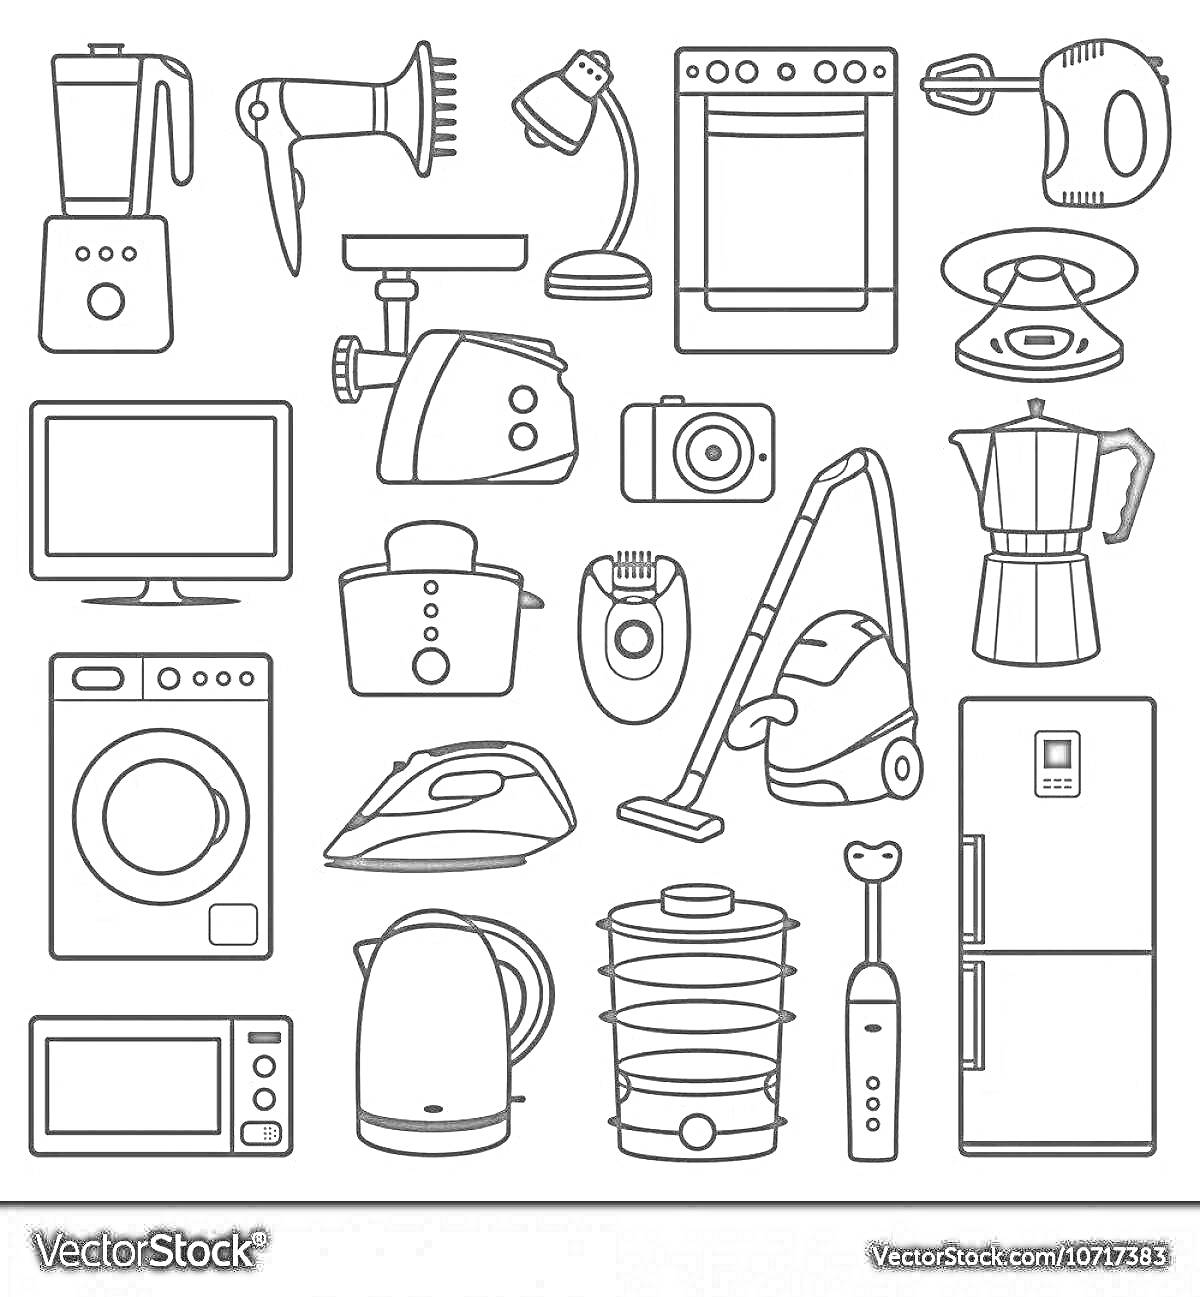 Раскраска Электроприборы: блендер, фен, настольная лампа, духовой шкаф, миксер, телевизор, тостер, камера, кофеварка, стиральная машина, утюг, пылесос, холодильник, микроволновая печь, электрочайник, яйцеварка, электрическая зубная щётка